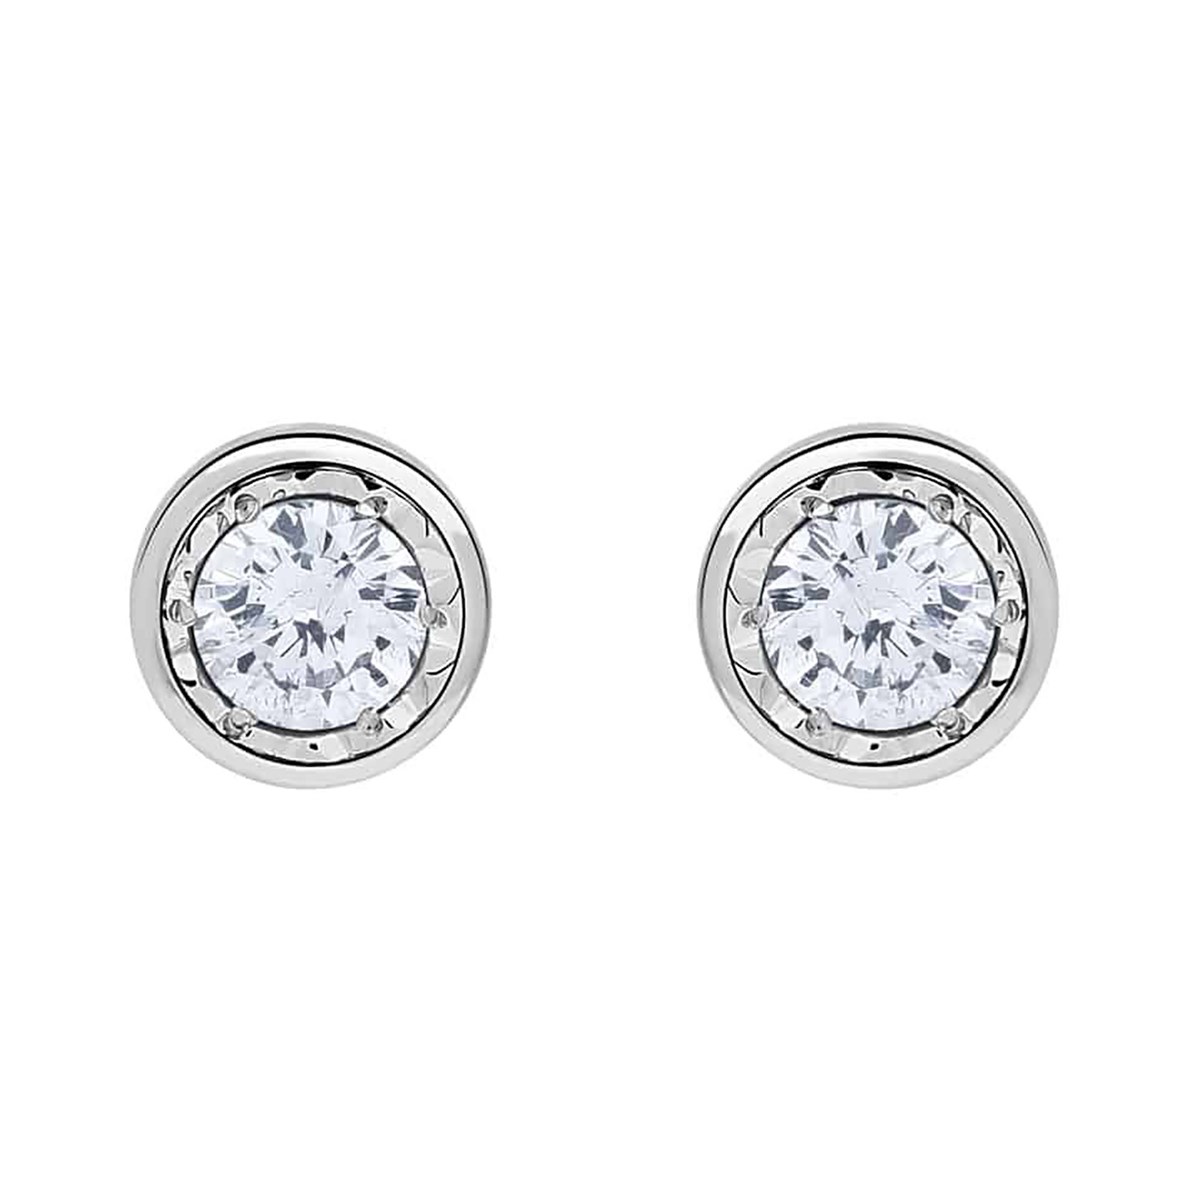 Boucles d'oreilles puces diamant or blanc 18 carats
0.20 ct